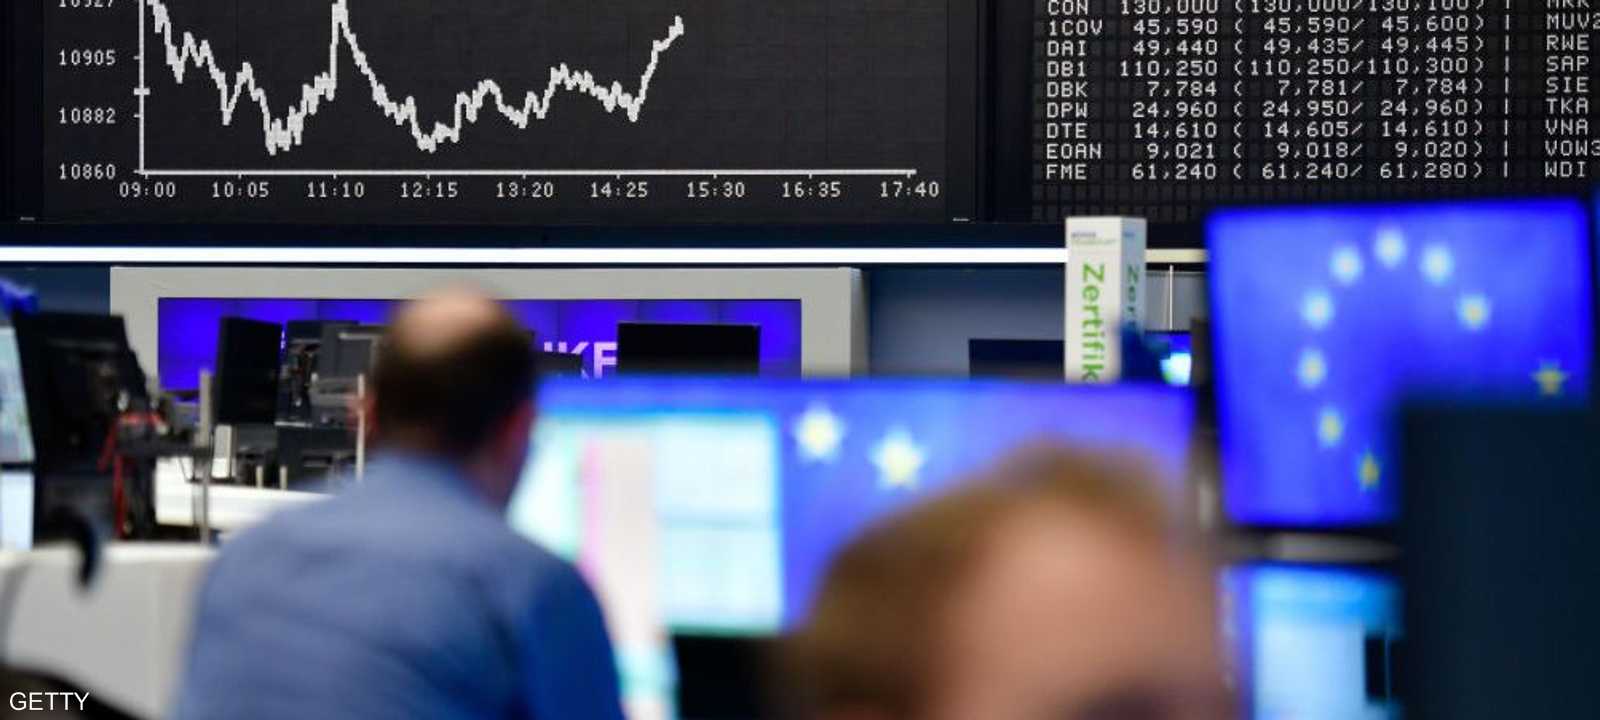 جاءت خسائر الأسهم الأوروبية بفعل عوامل سياسية واقتصادية